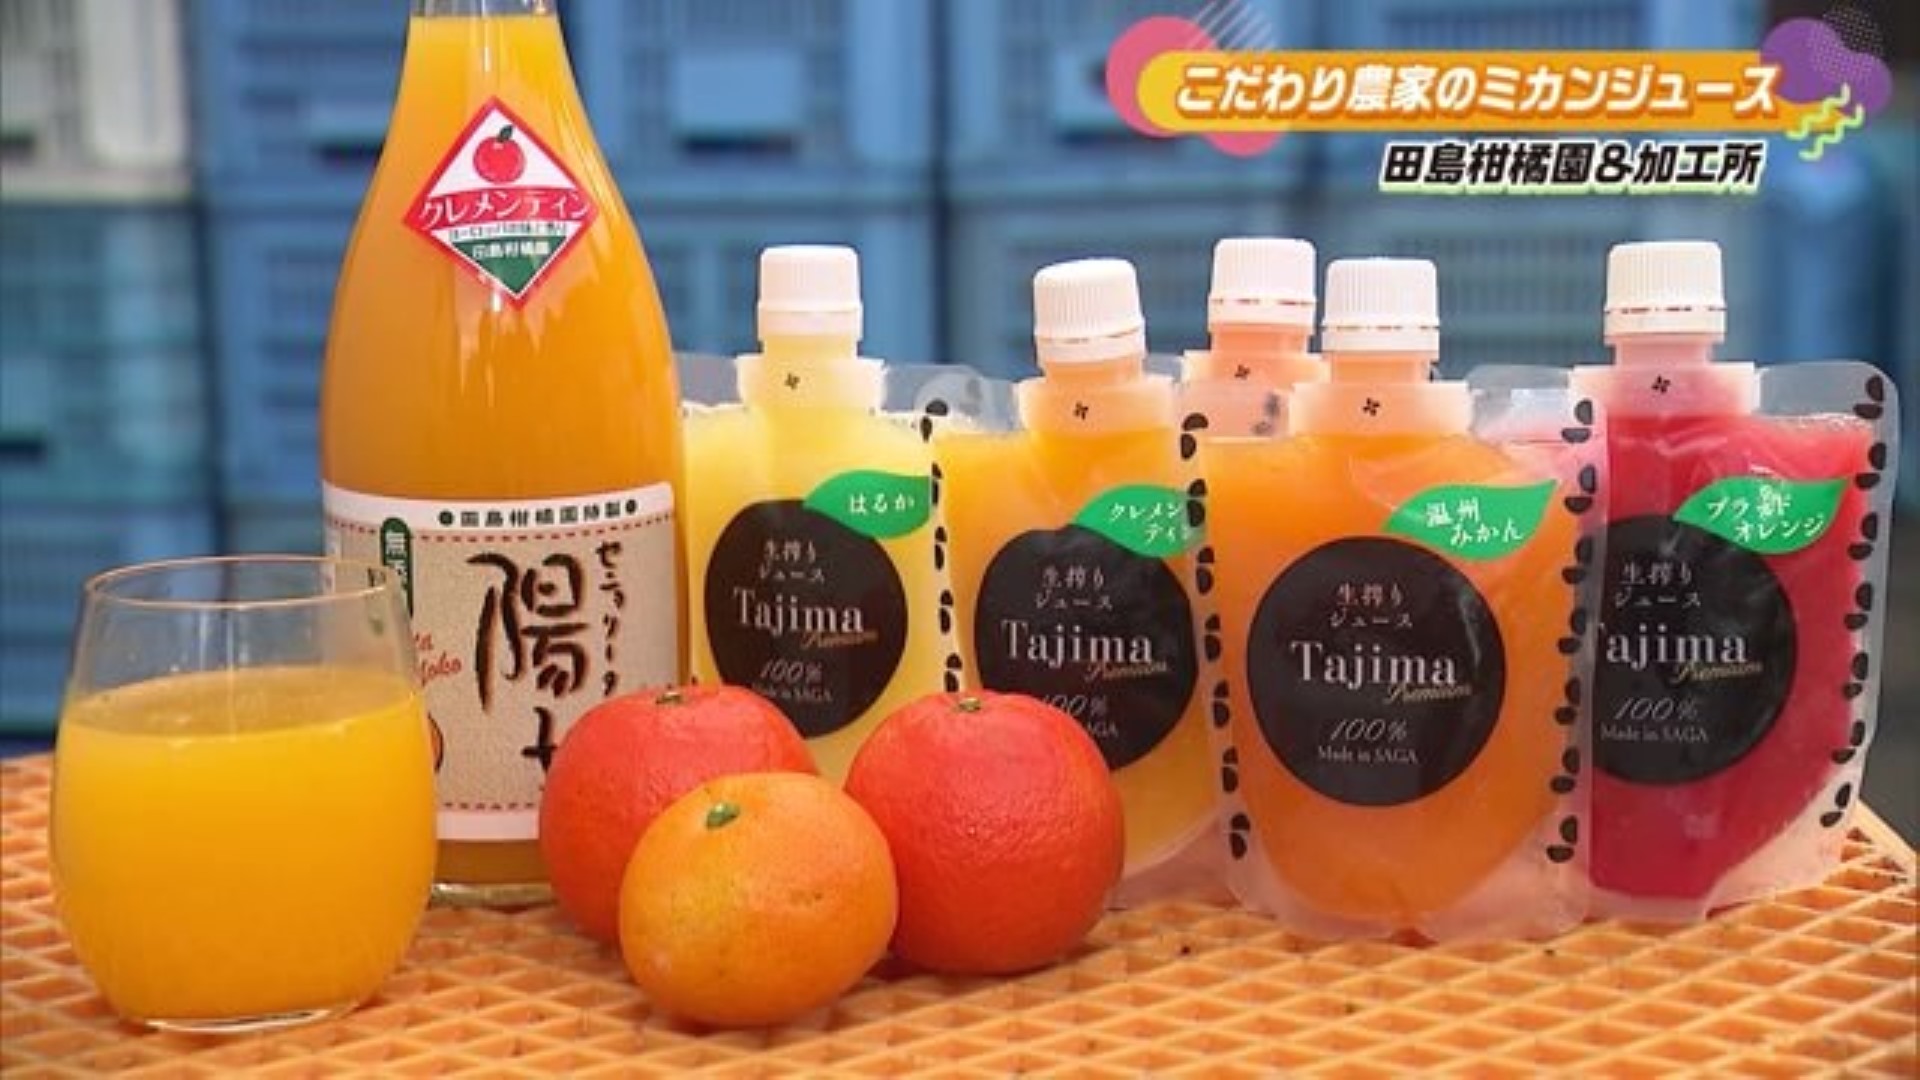 おいしい果汁だけを絞った 贅沢なミカンジュース！「田島柑橘園&加工所」